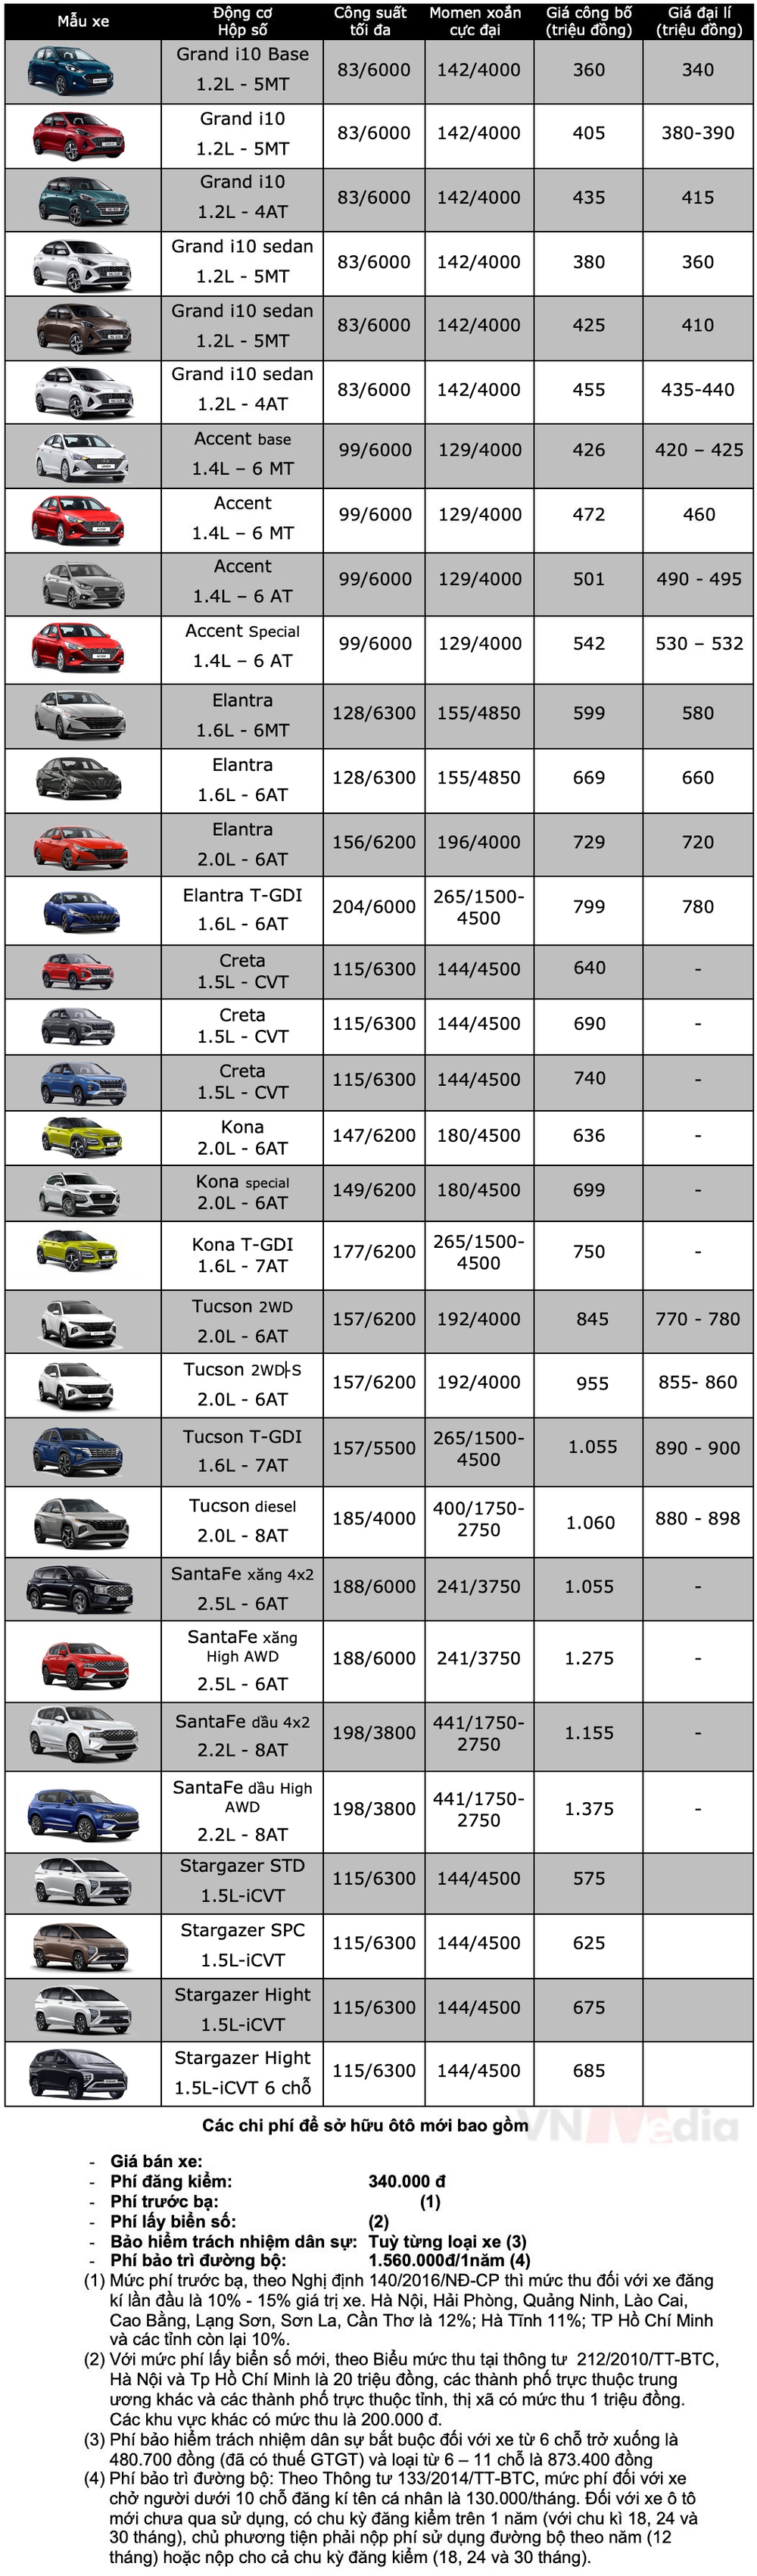 Bảng giá xe Hyundai tháng 5: Hyundai Tucson giảm tới 65 triệu đồng - Ảnh 2.